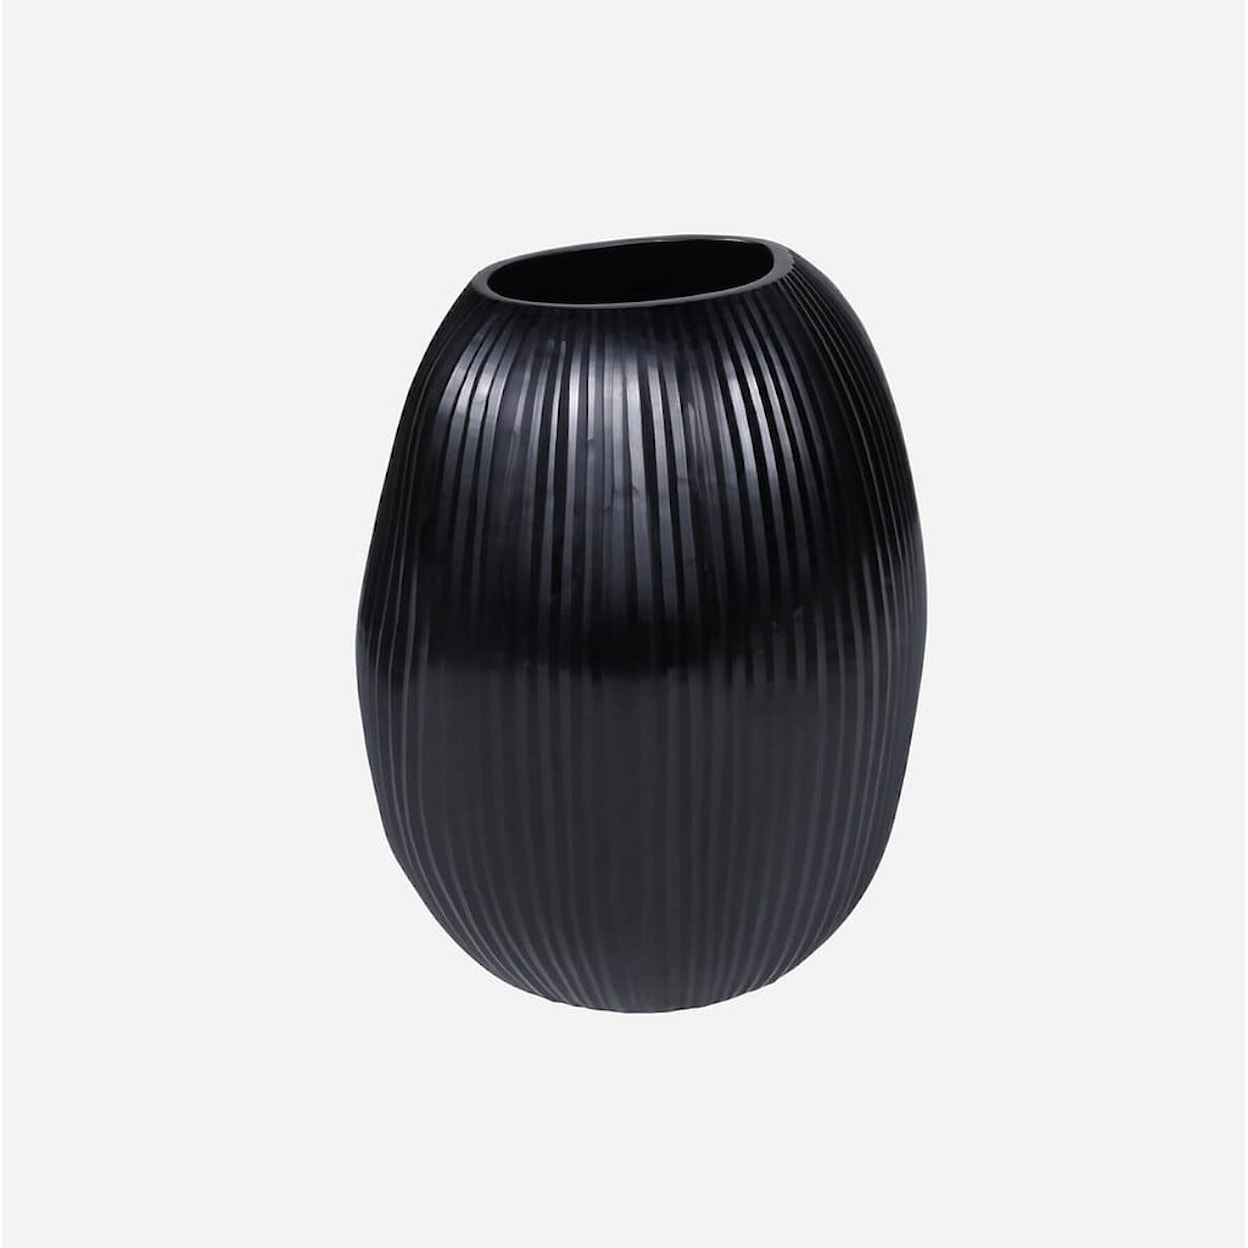 BOBO Intriguing Objects BOBO Intriguing Objects Seine Black Sculptural Glass Vase - Large